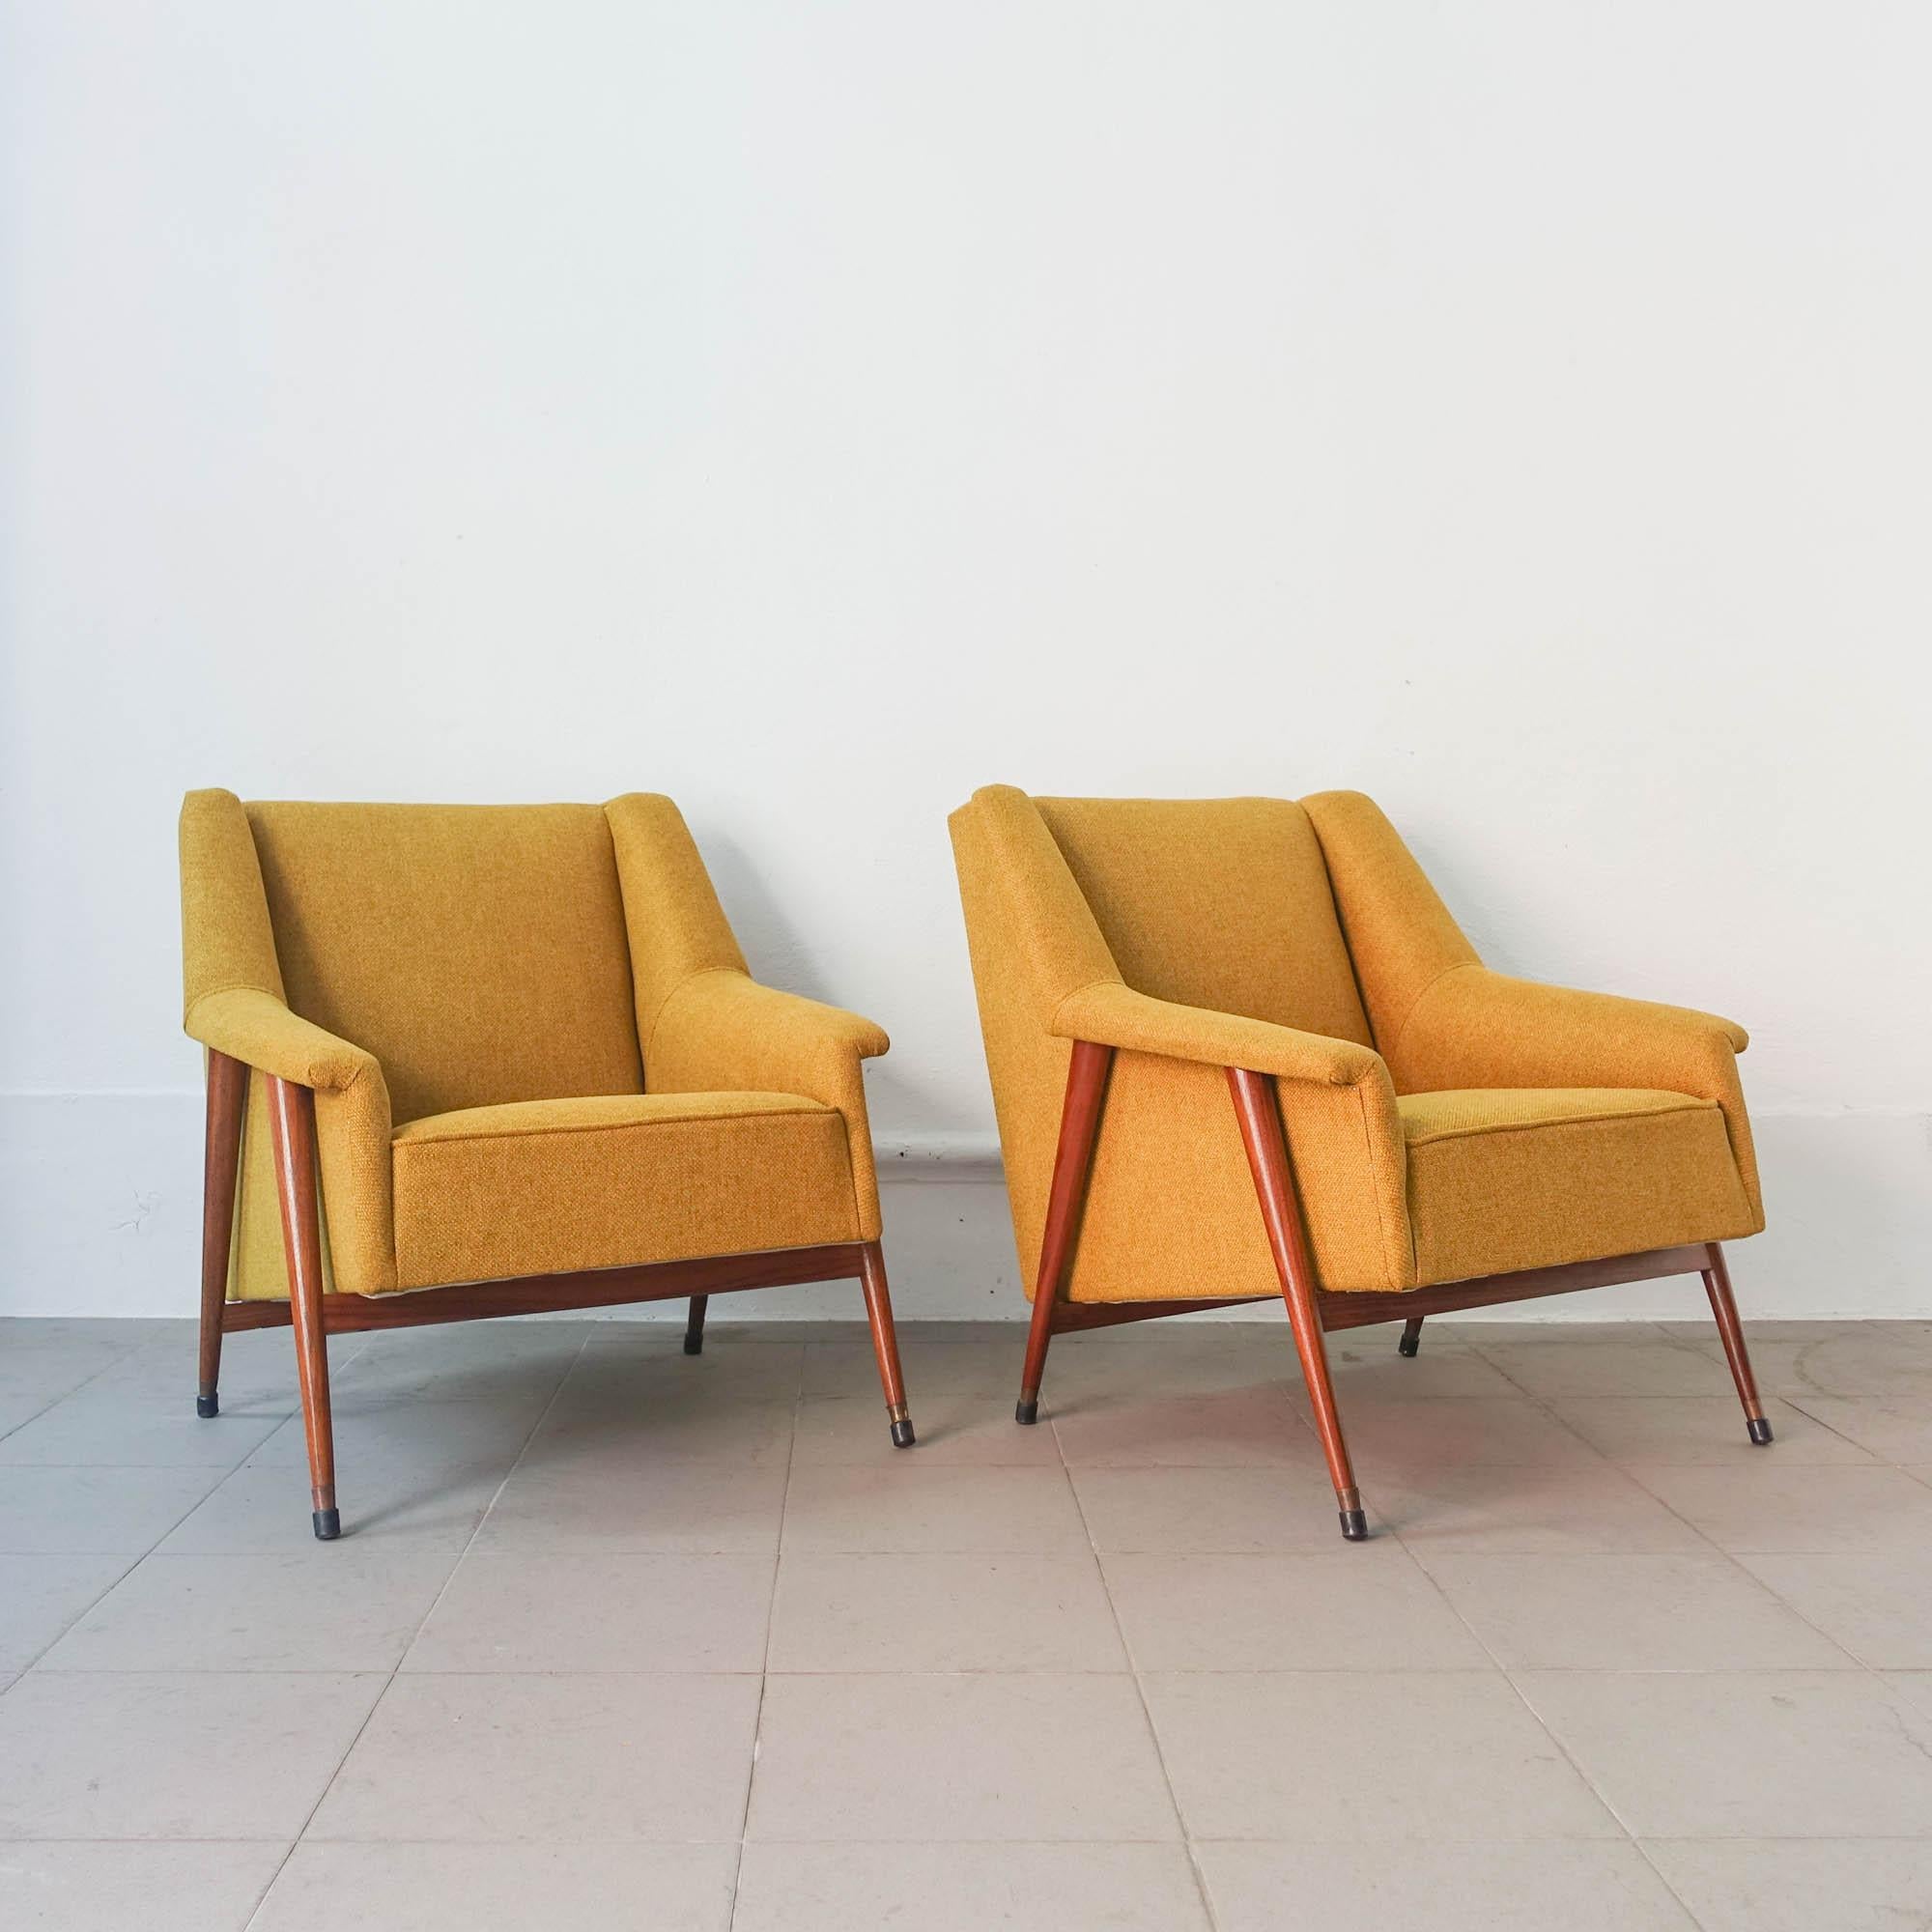 Cette paire de chaises Easy a été conçue par José Espinho pour Olaio, au Portugal, en 1959. La structure en bois a été entièrement restaurée et l'un des fauteuils est en bois massif de sucupira et l'autre en bois massif d'undianuno. Ils ont des